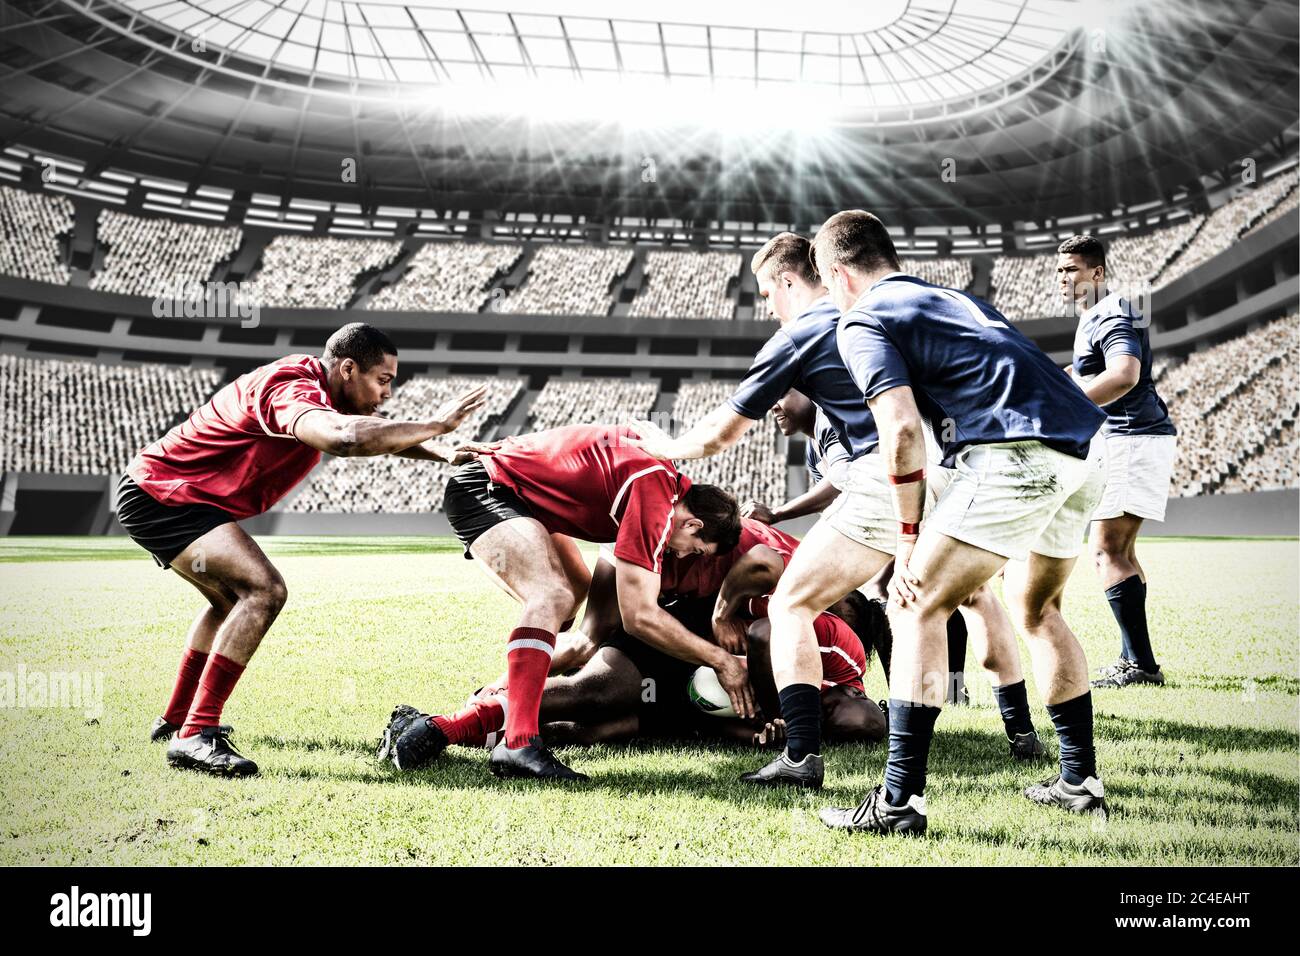 Image numérique composite d'une équipe de joueurs de rugby s'affrontant pour gagner le ballon dans un sport de stadi Banque D'Images